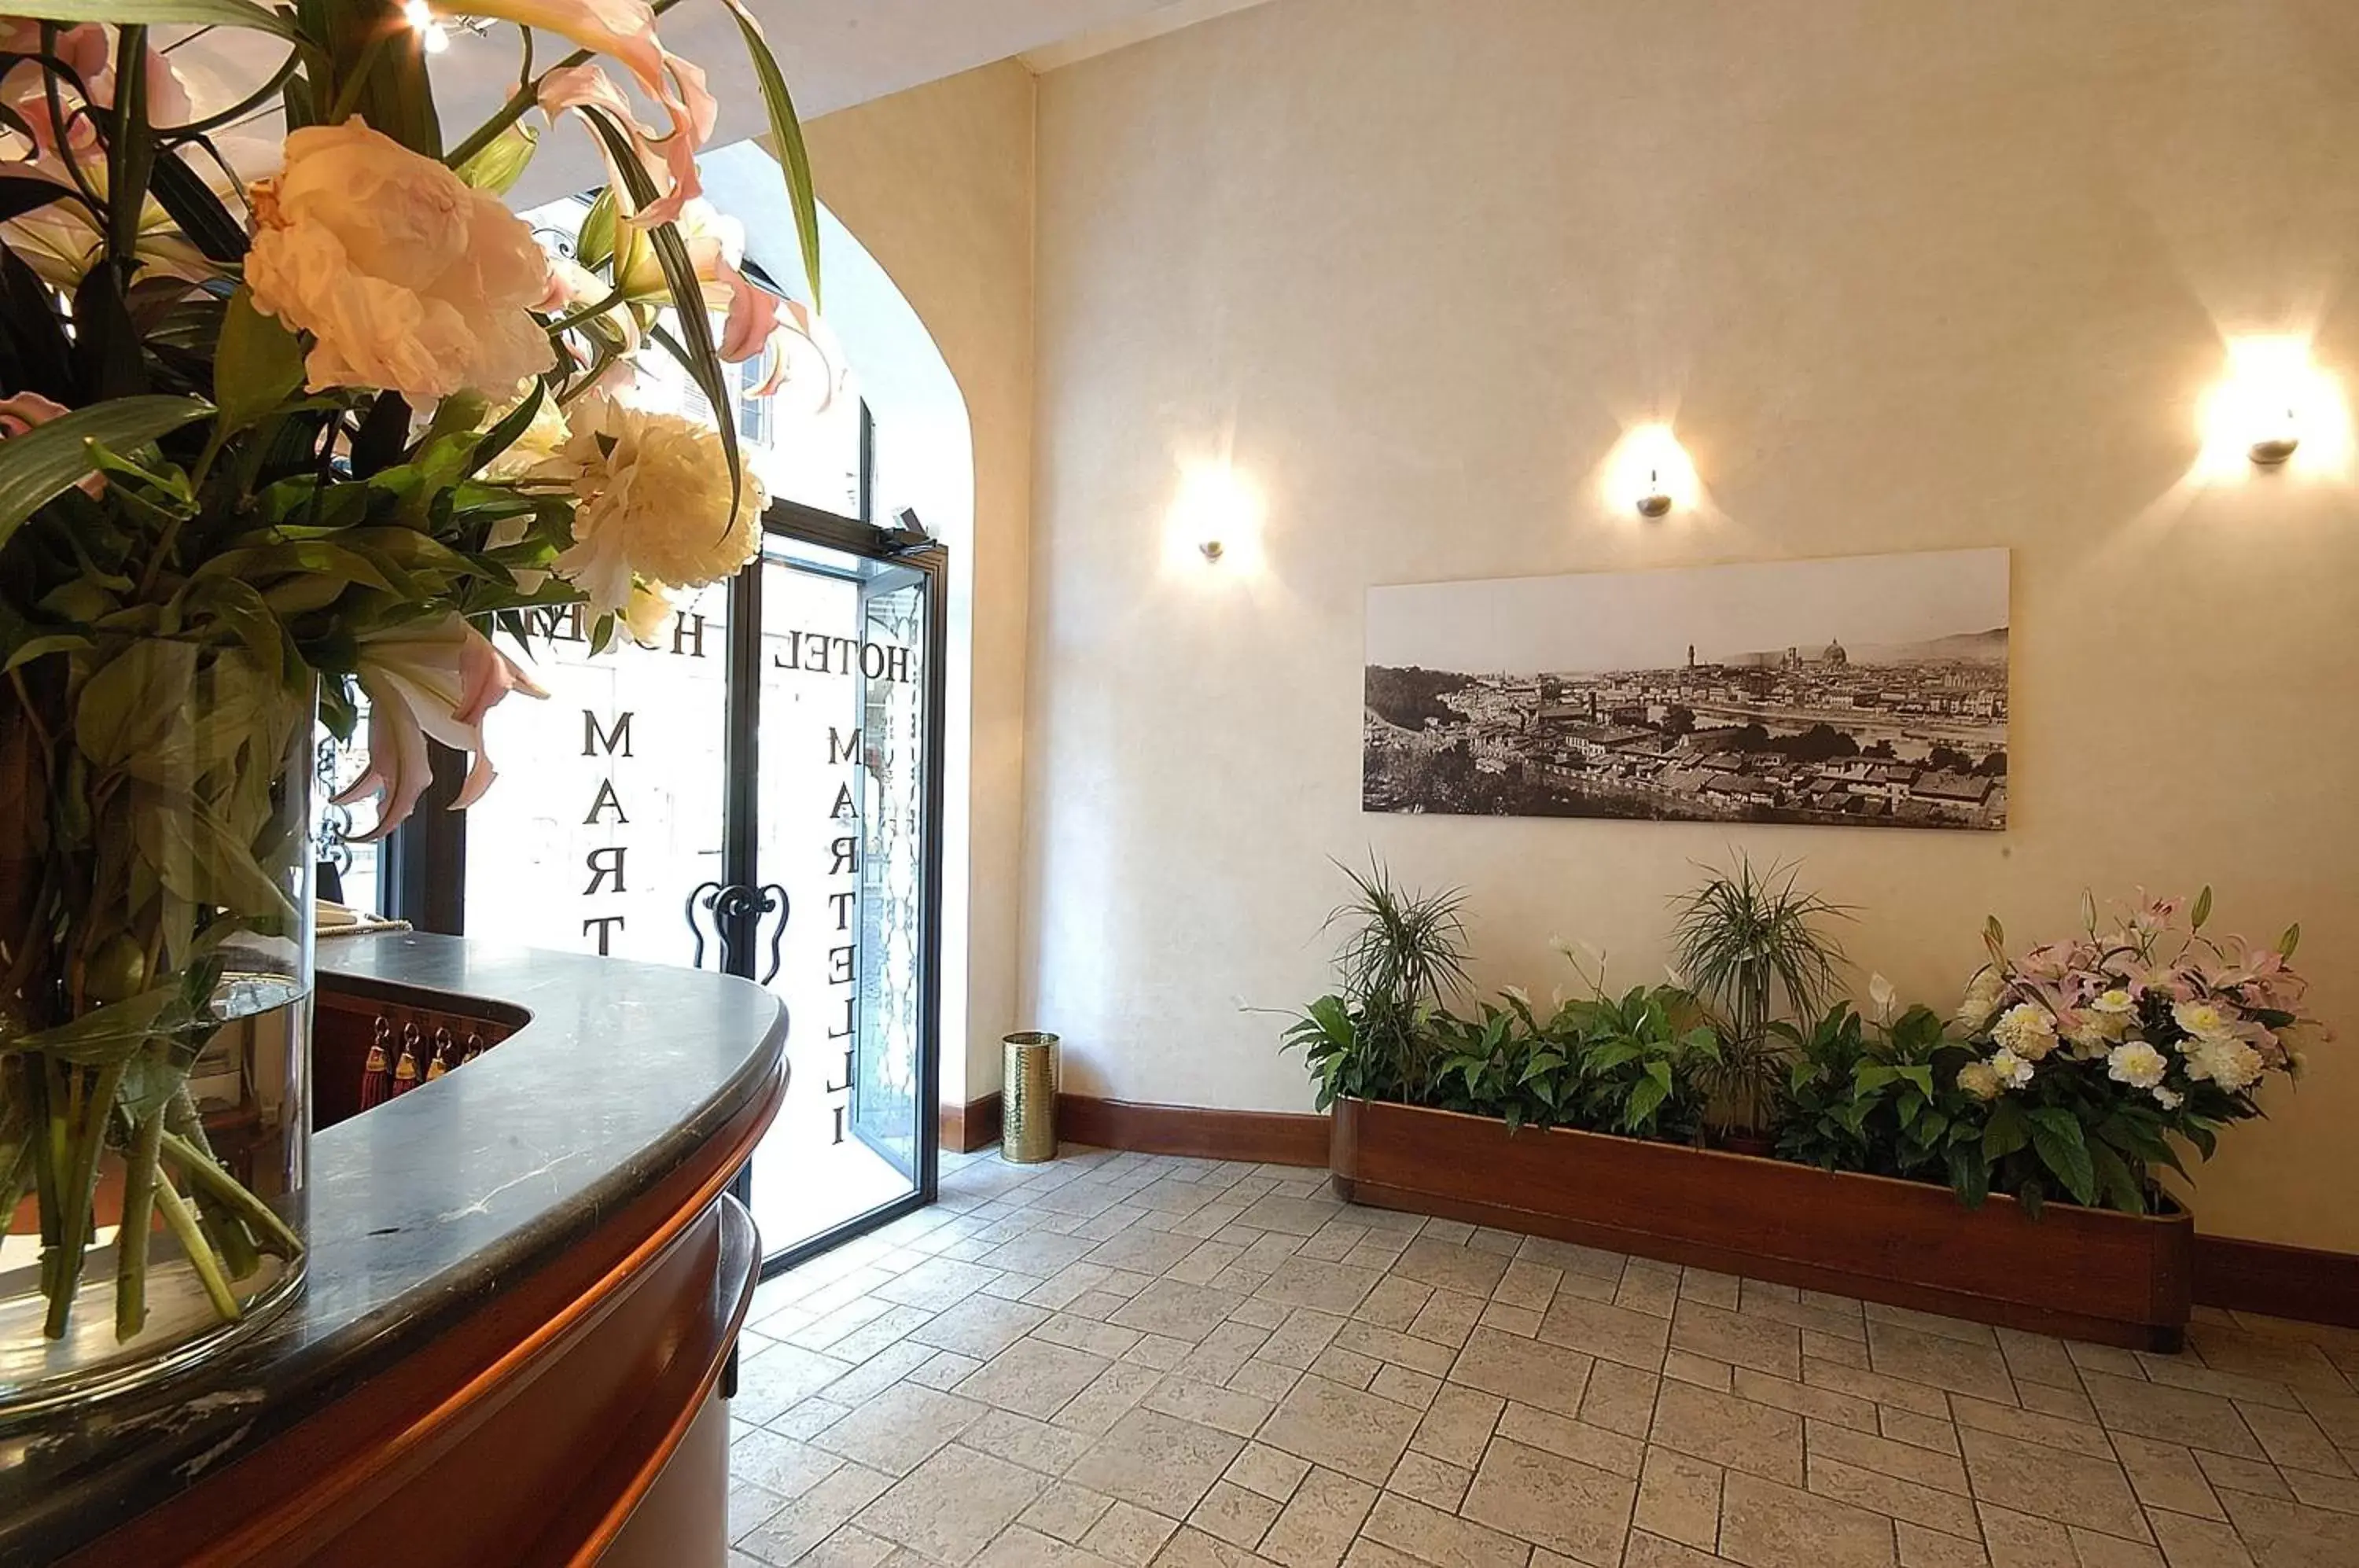 Lobby or reception in Hotel Martelli